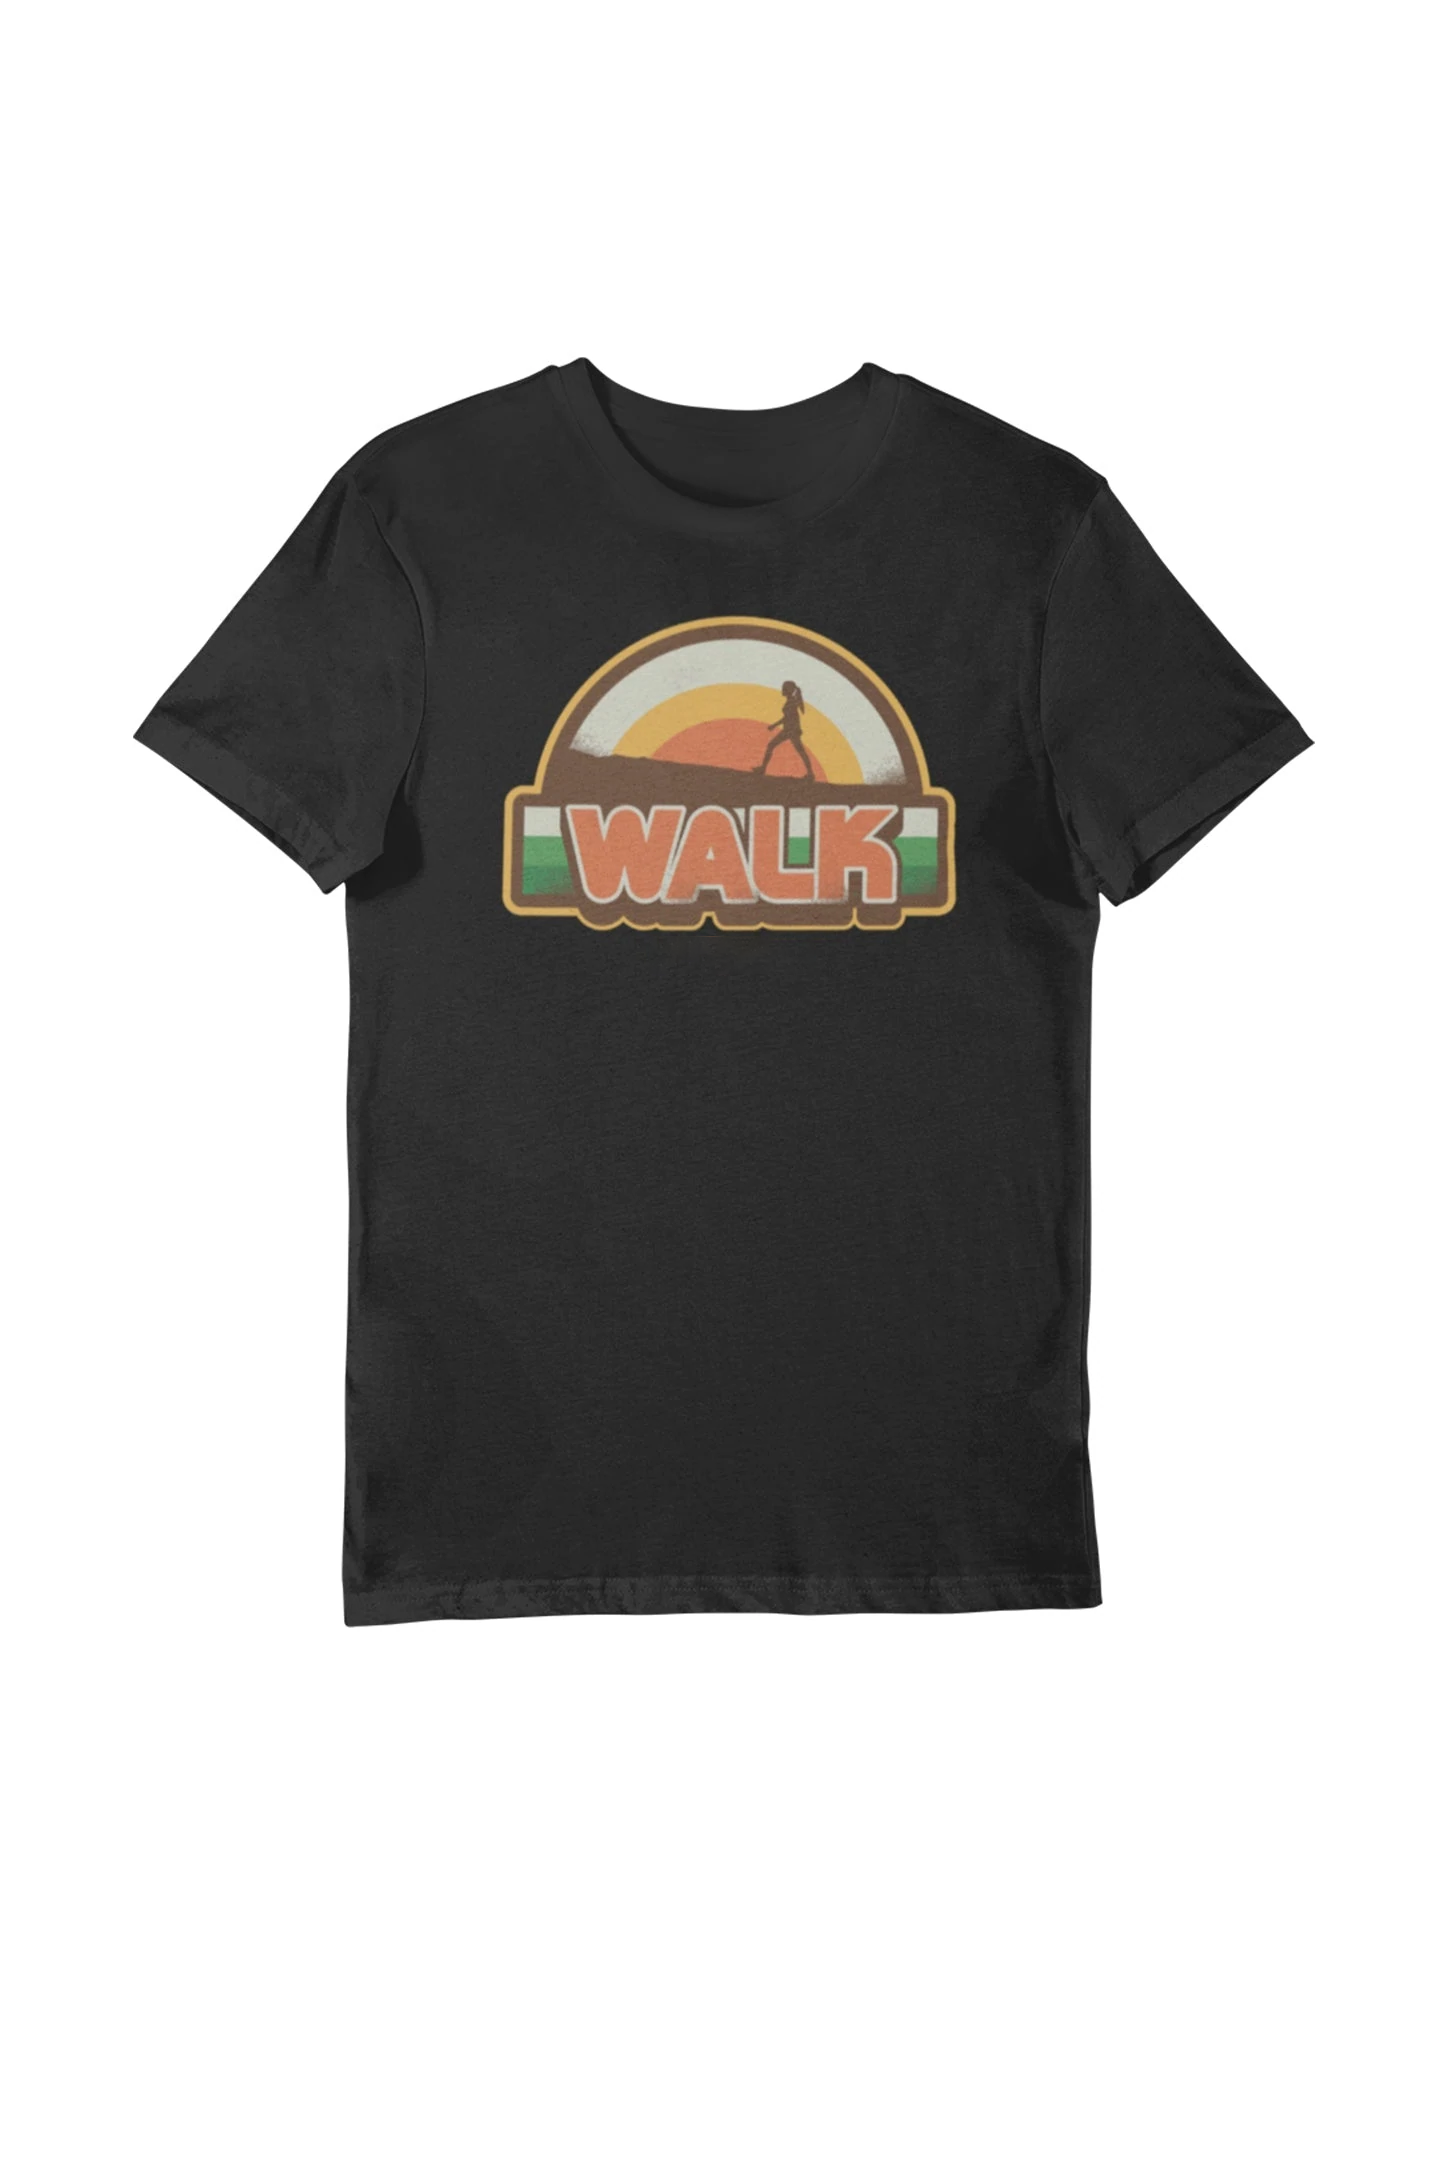 Walk - Men's